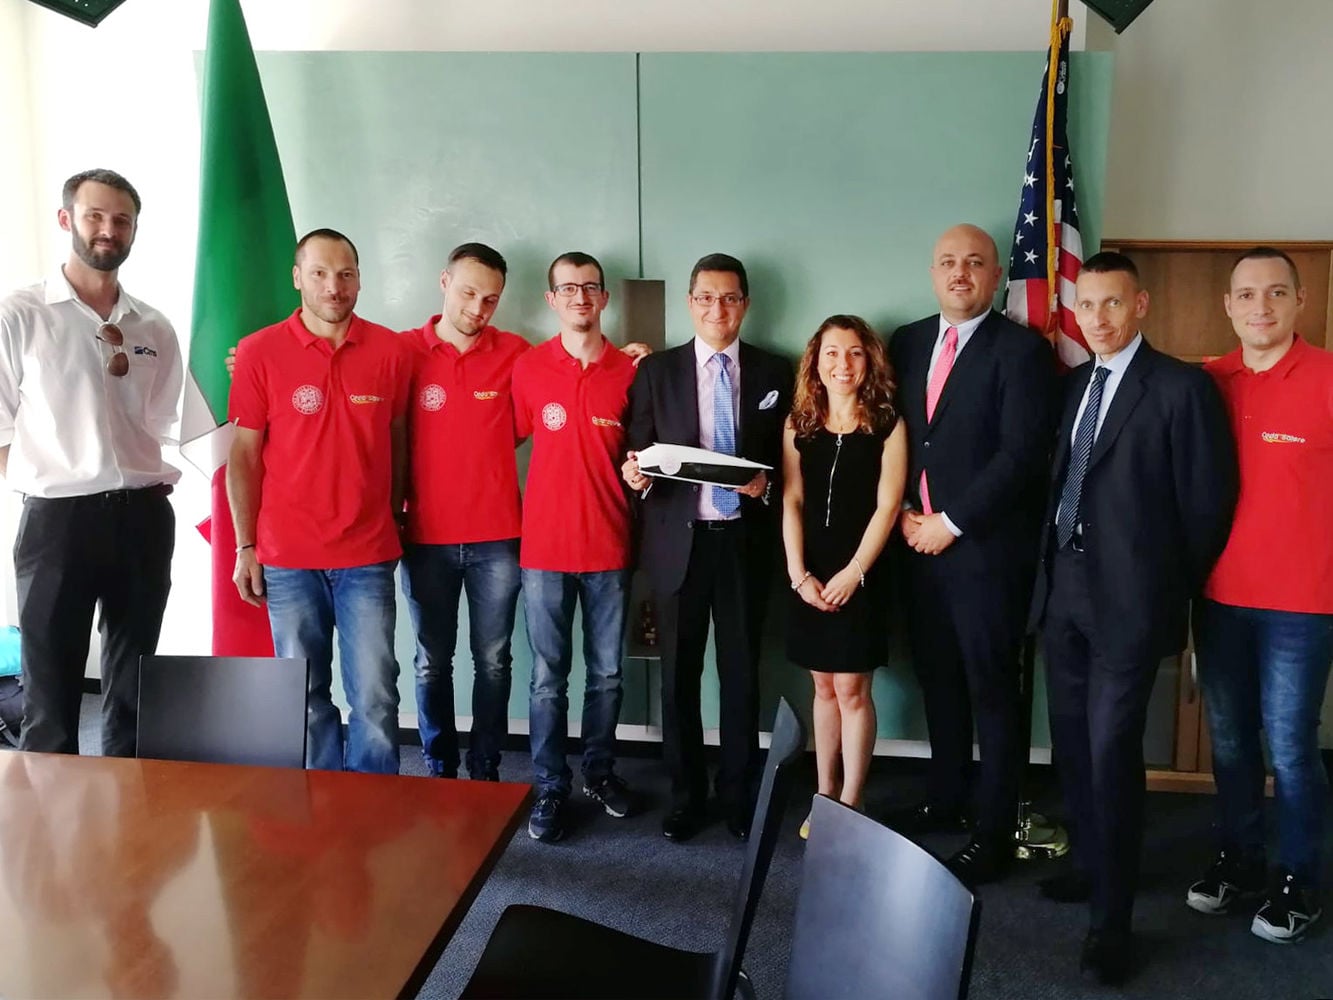 Scm Group e Cms visitam o consulado italiano em Chicago com a equipe Onda Solare